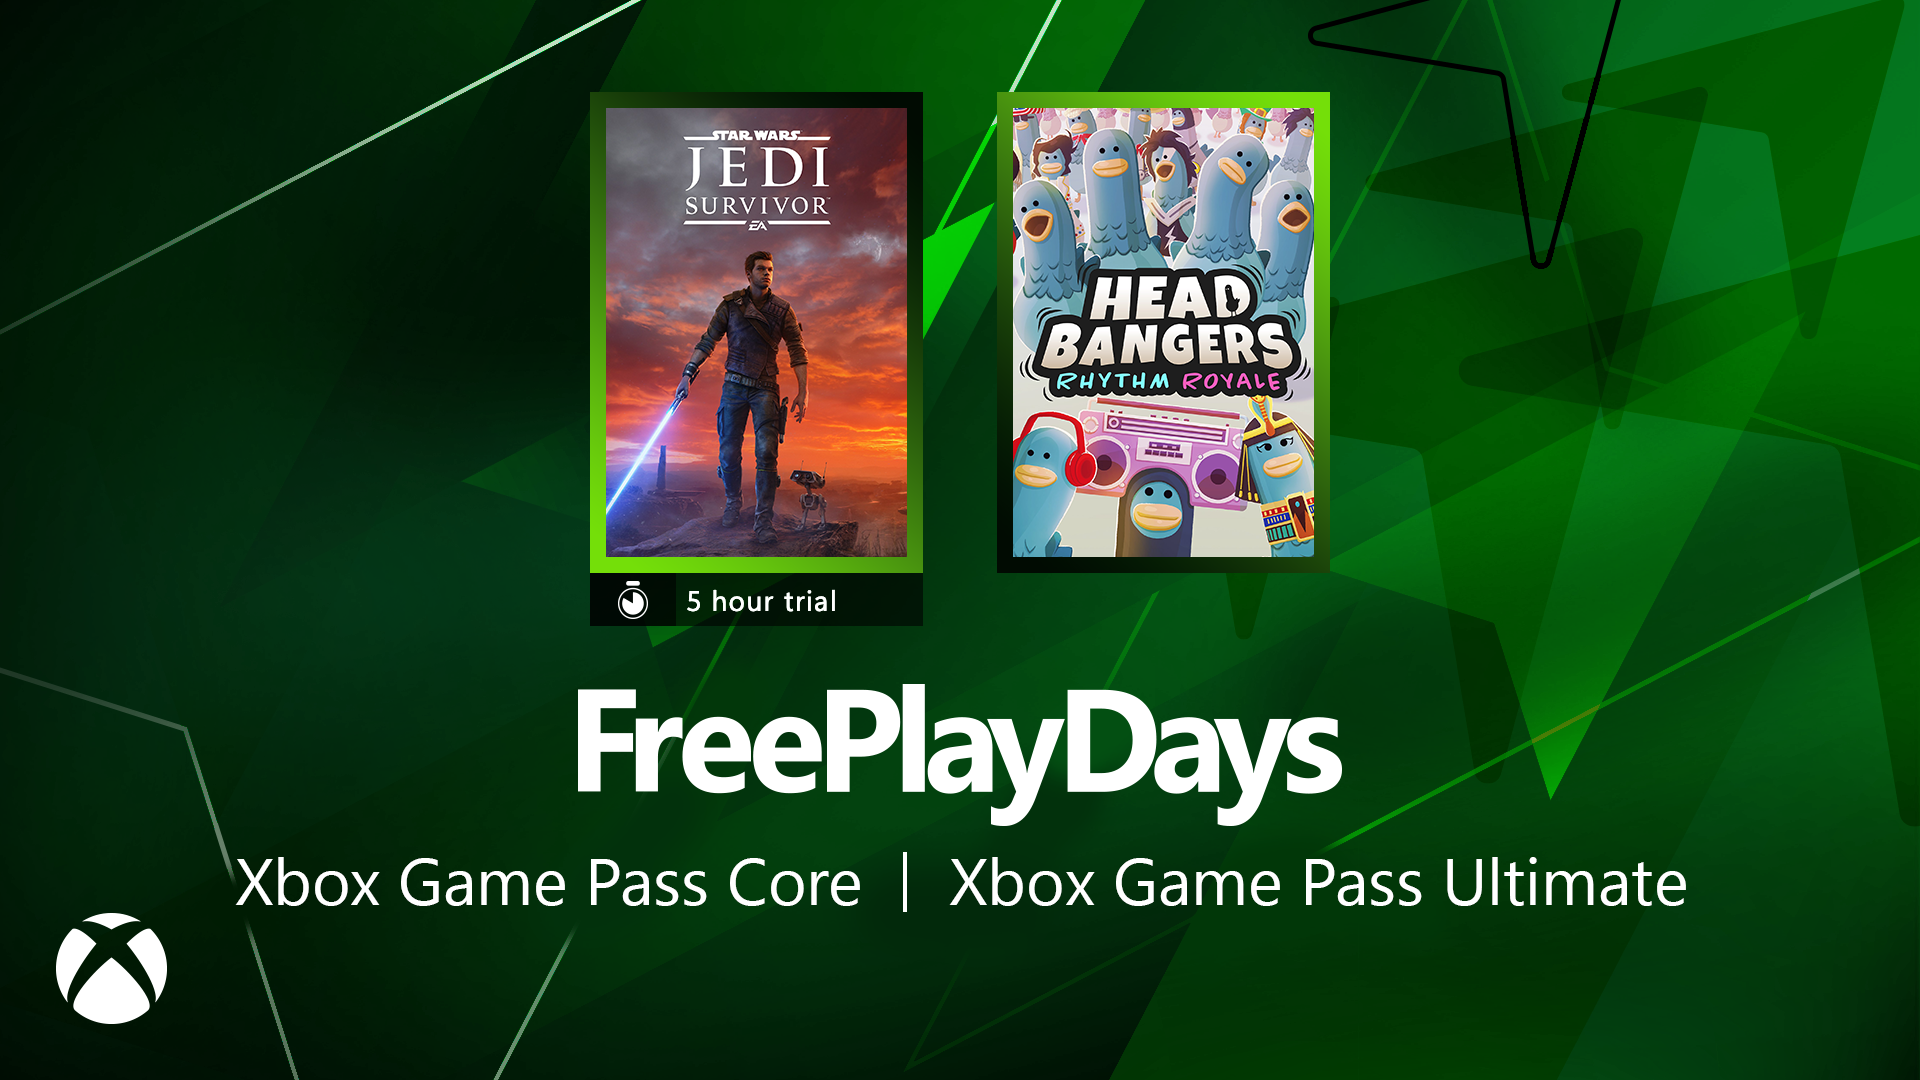 microsoft, star wars jedi: survivor está disponible gratis todo el fin de semana en xbox, ¡sin necesidad de game pass!